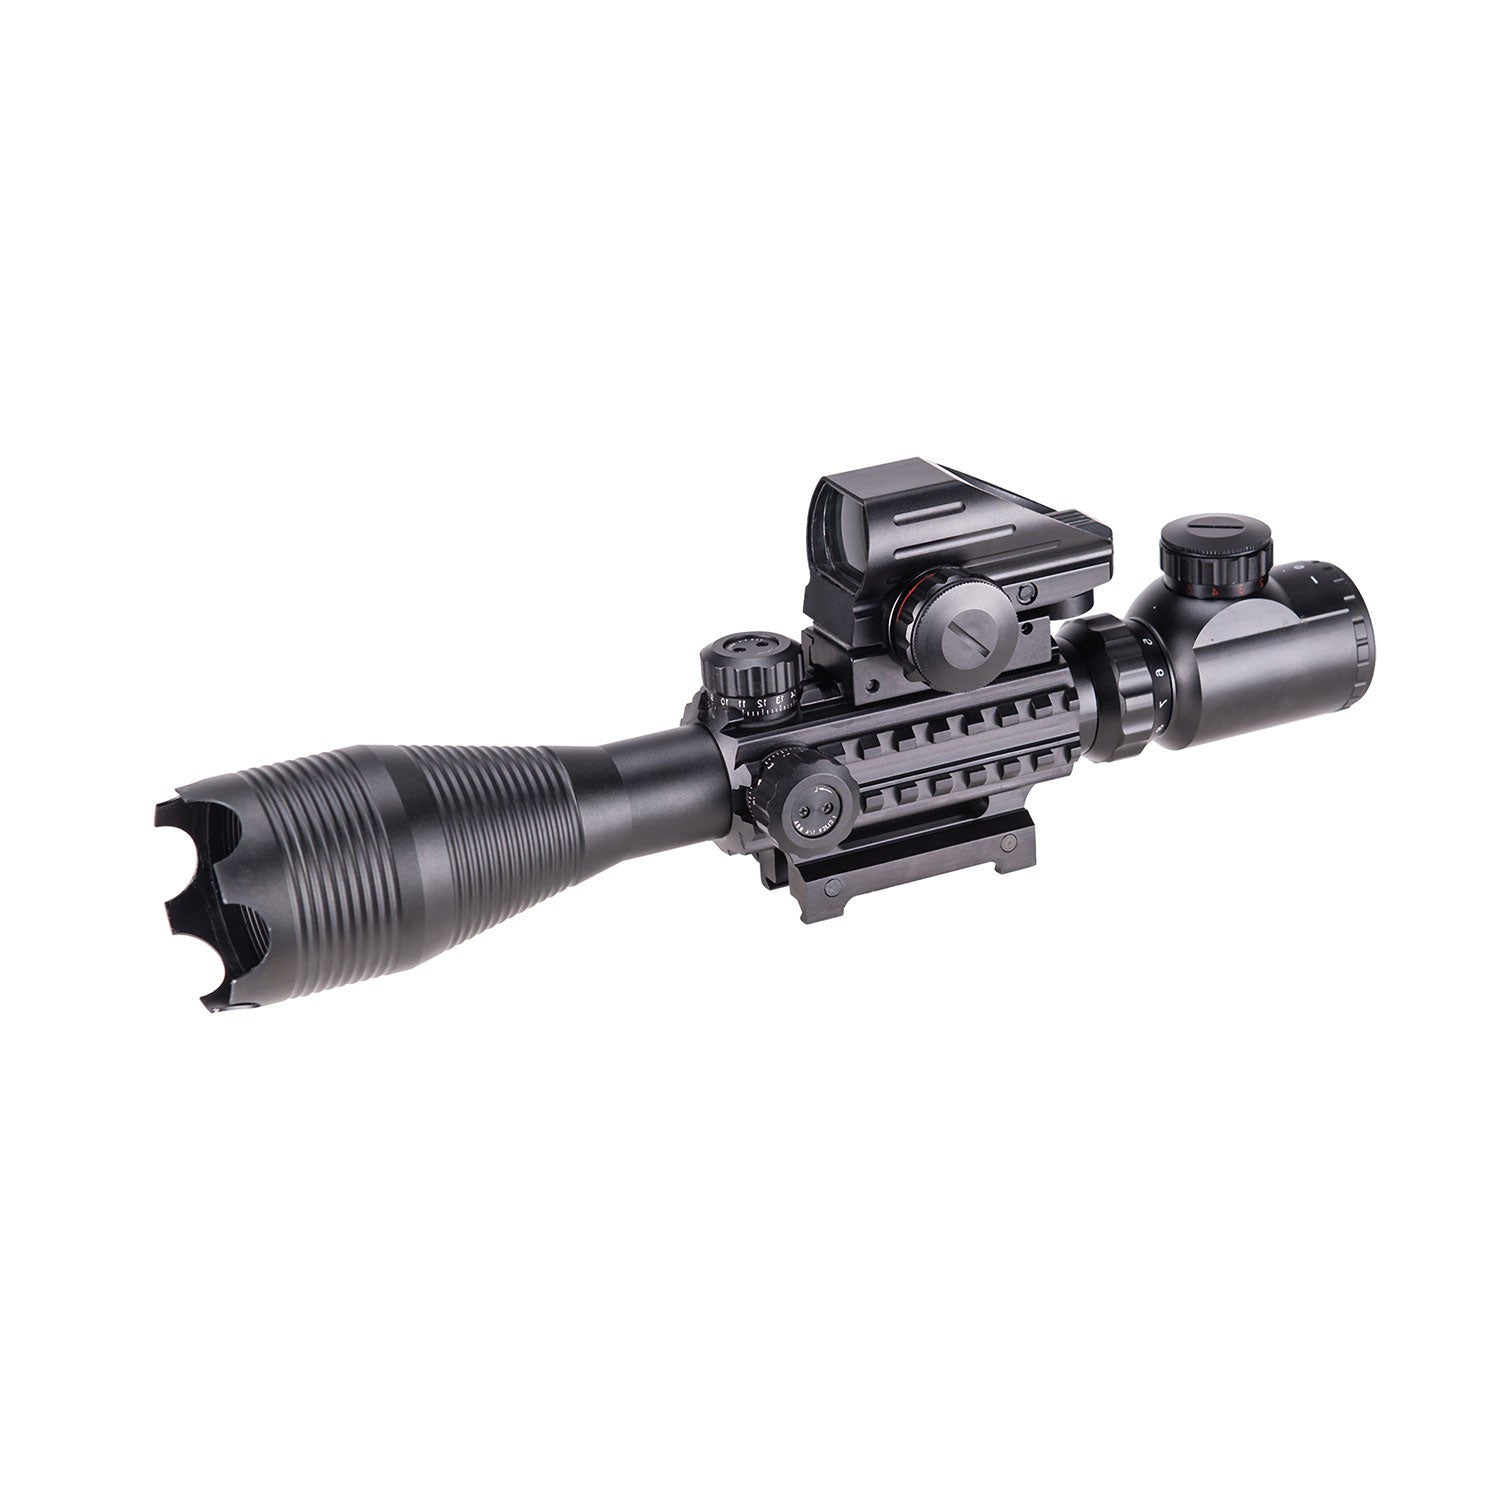 Rifle Scope Combo, 4-16x50EG Illuminated Rangefinder Rifle Scope, Red Laser